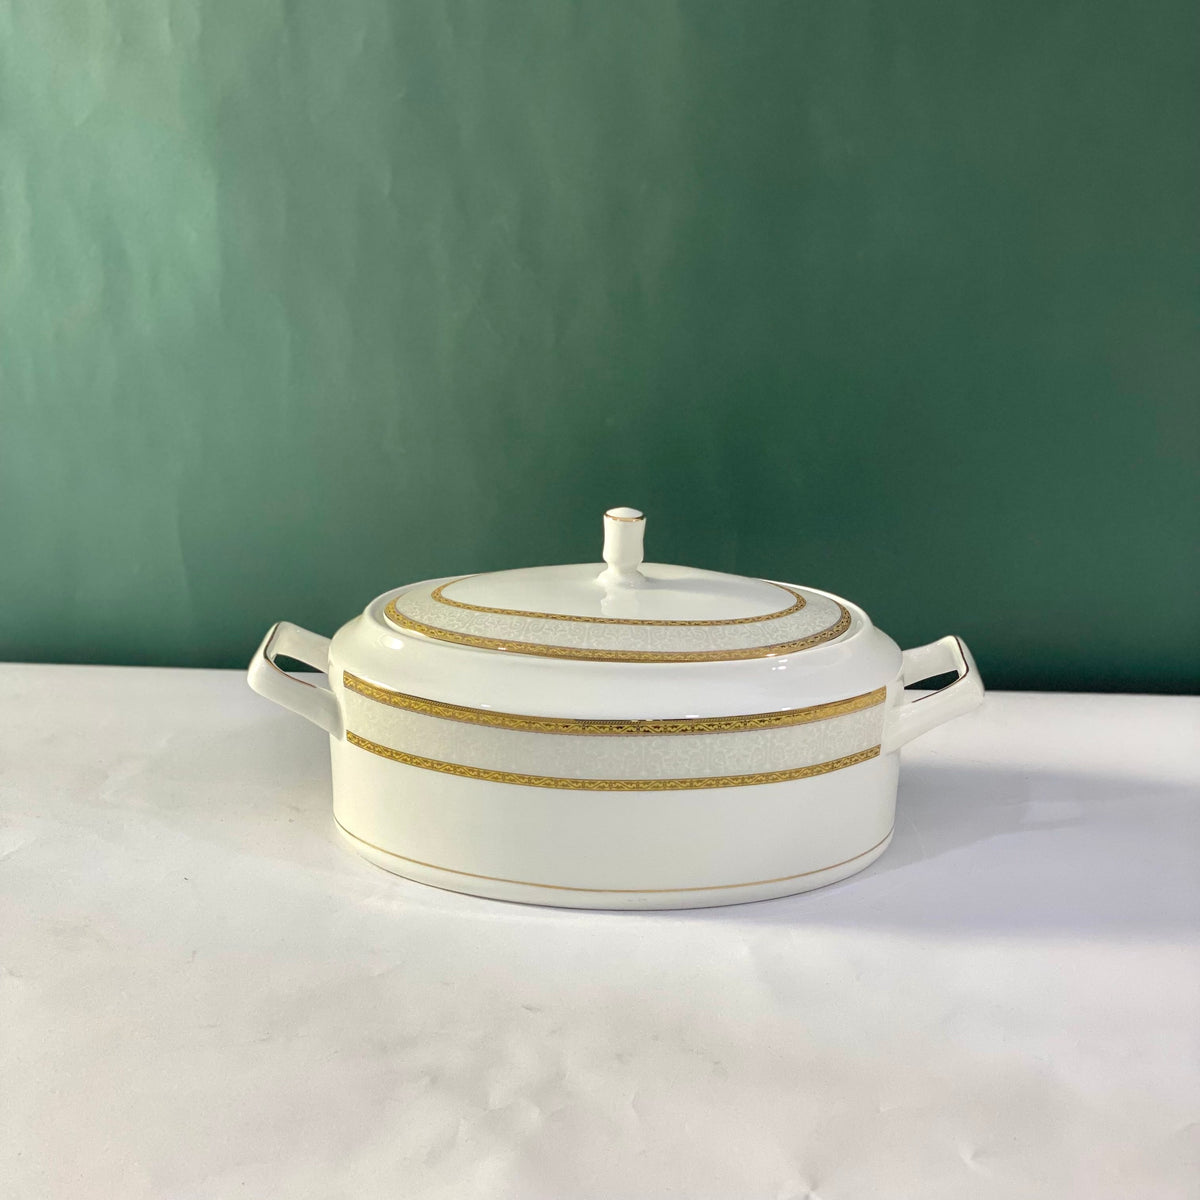 Ceramic Porcelain Serving Bowl with Lid - Design J